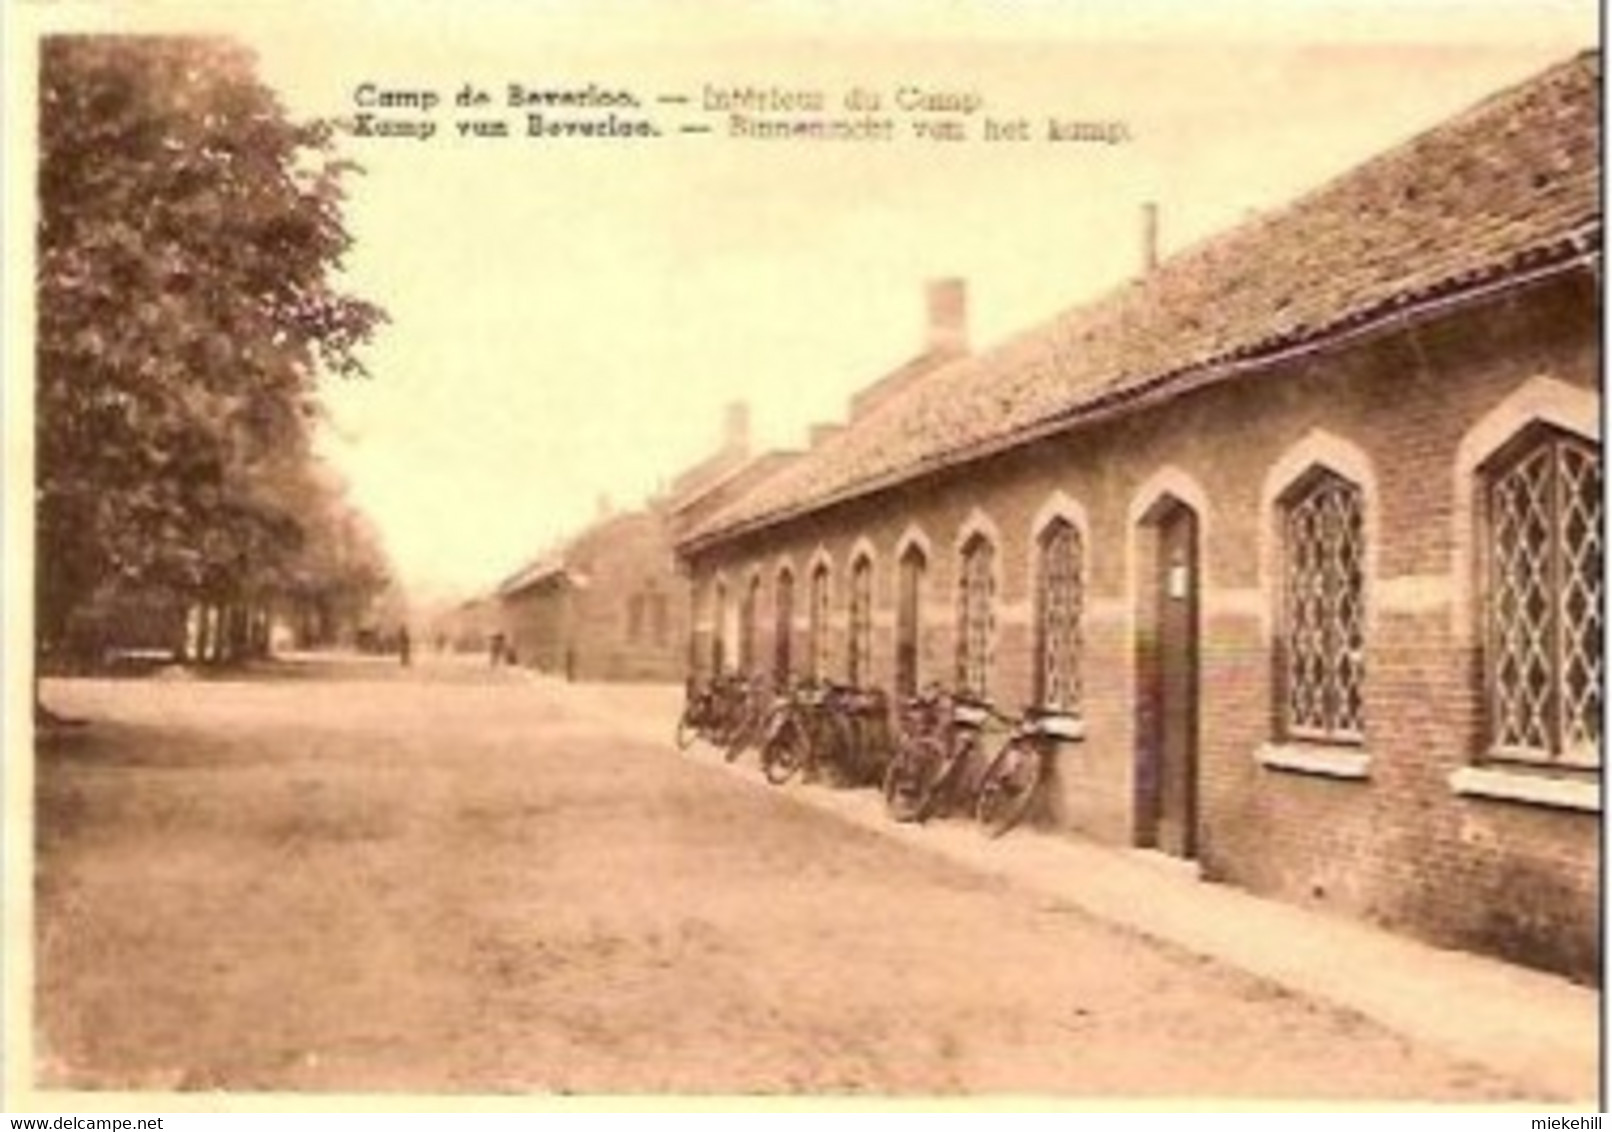 CAMP DE BEVERLOO-INTERIEUR DU CAMP-BINNENZICHT VAN HET KAMP - Leopoldsburg (Beverloo Camp)